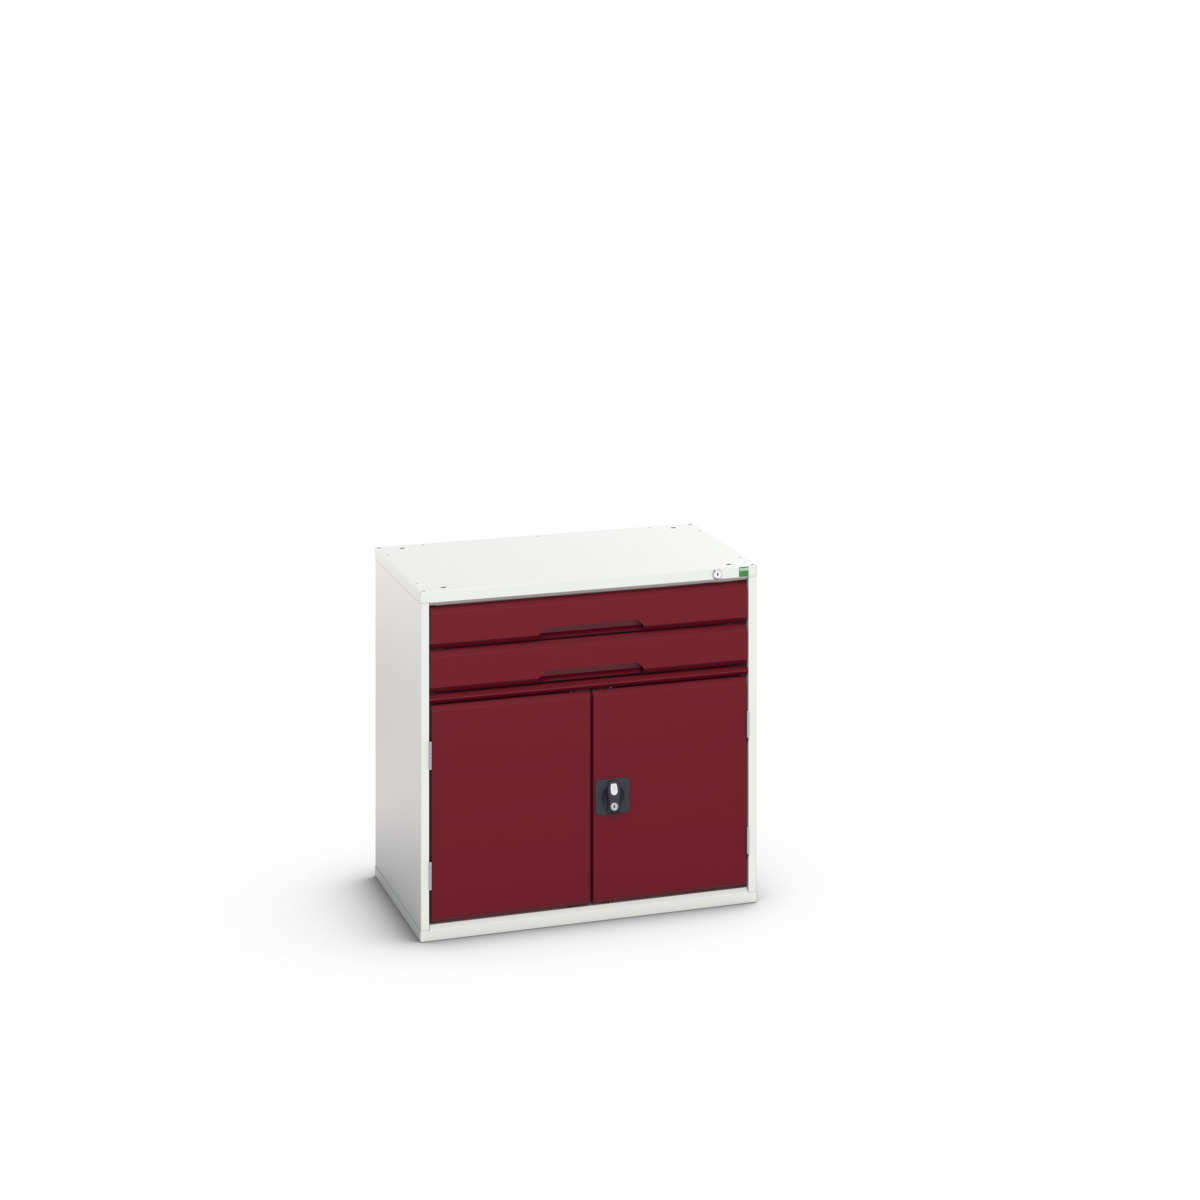 16925416.24 - verso drawer-door cabinet